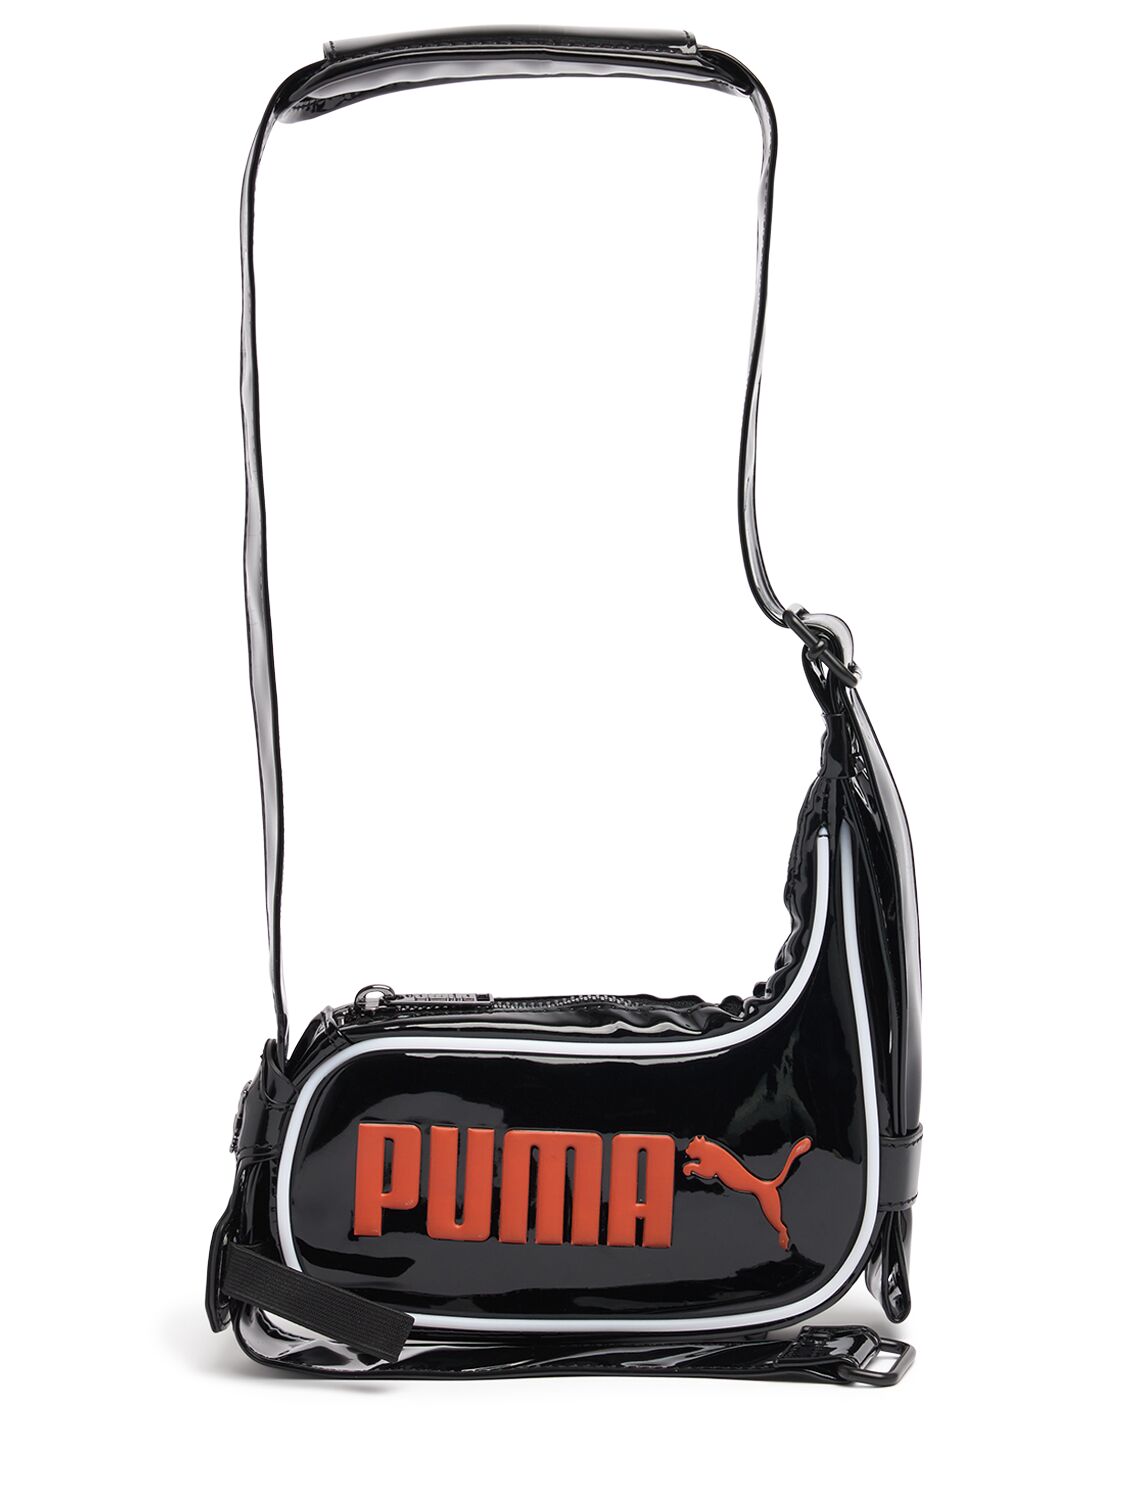 Puma X Ottolinger Small Shoulder Bag